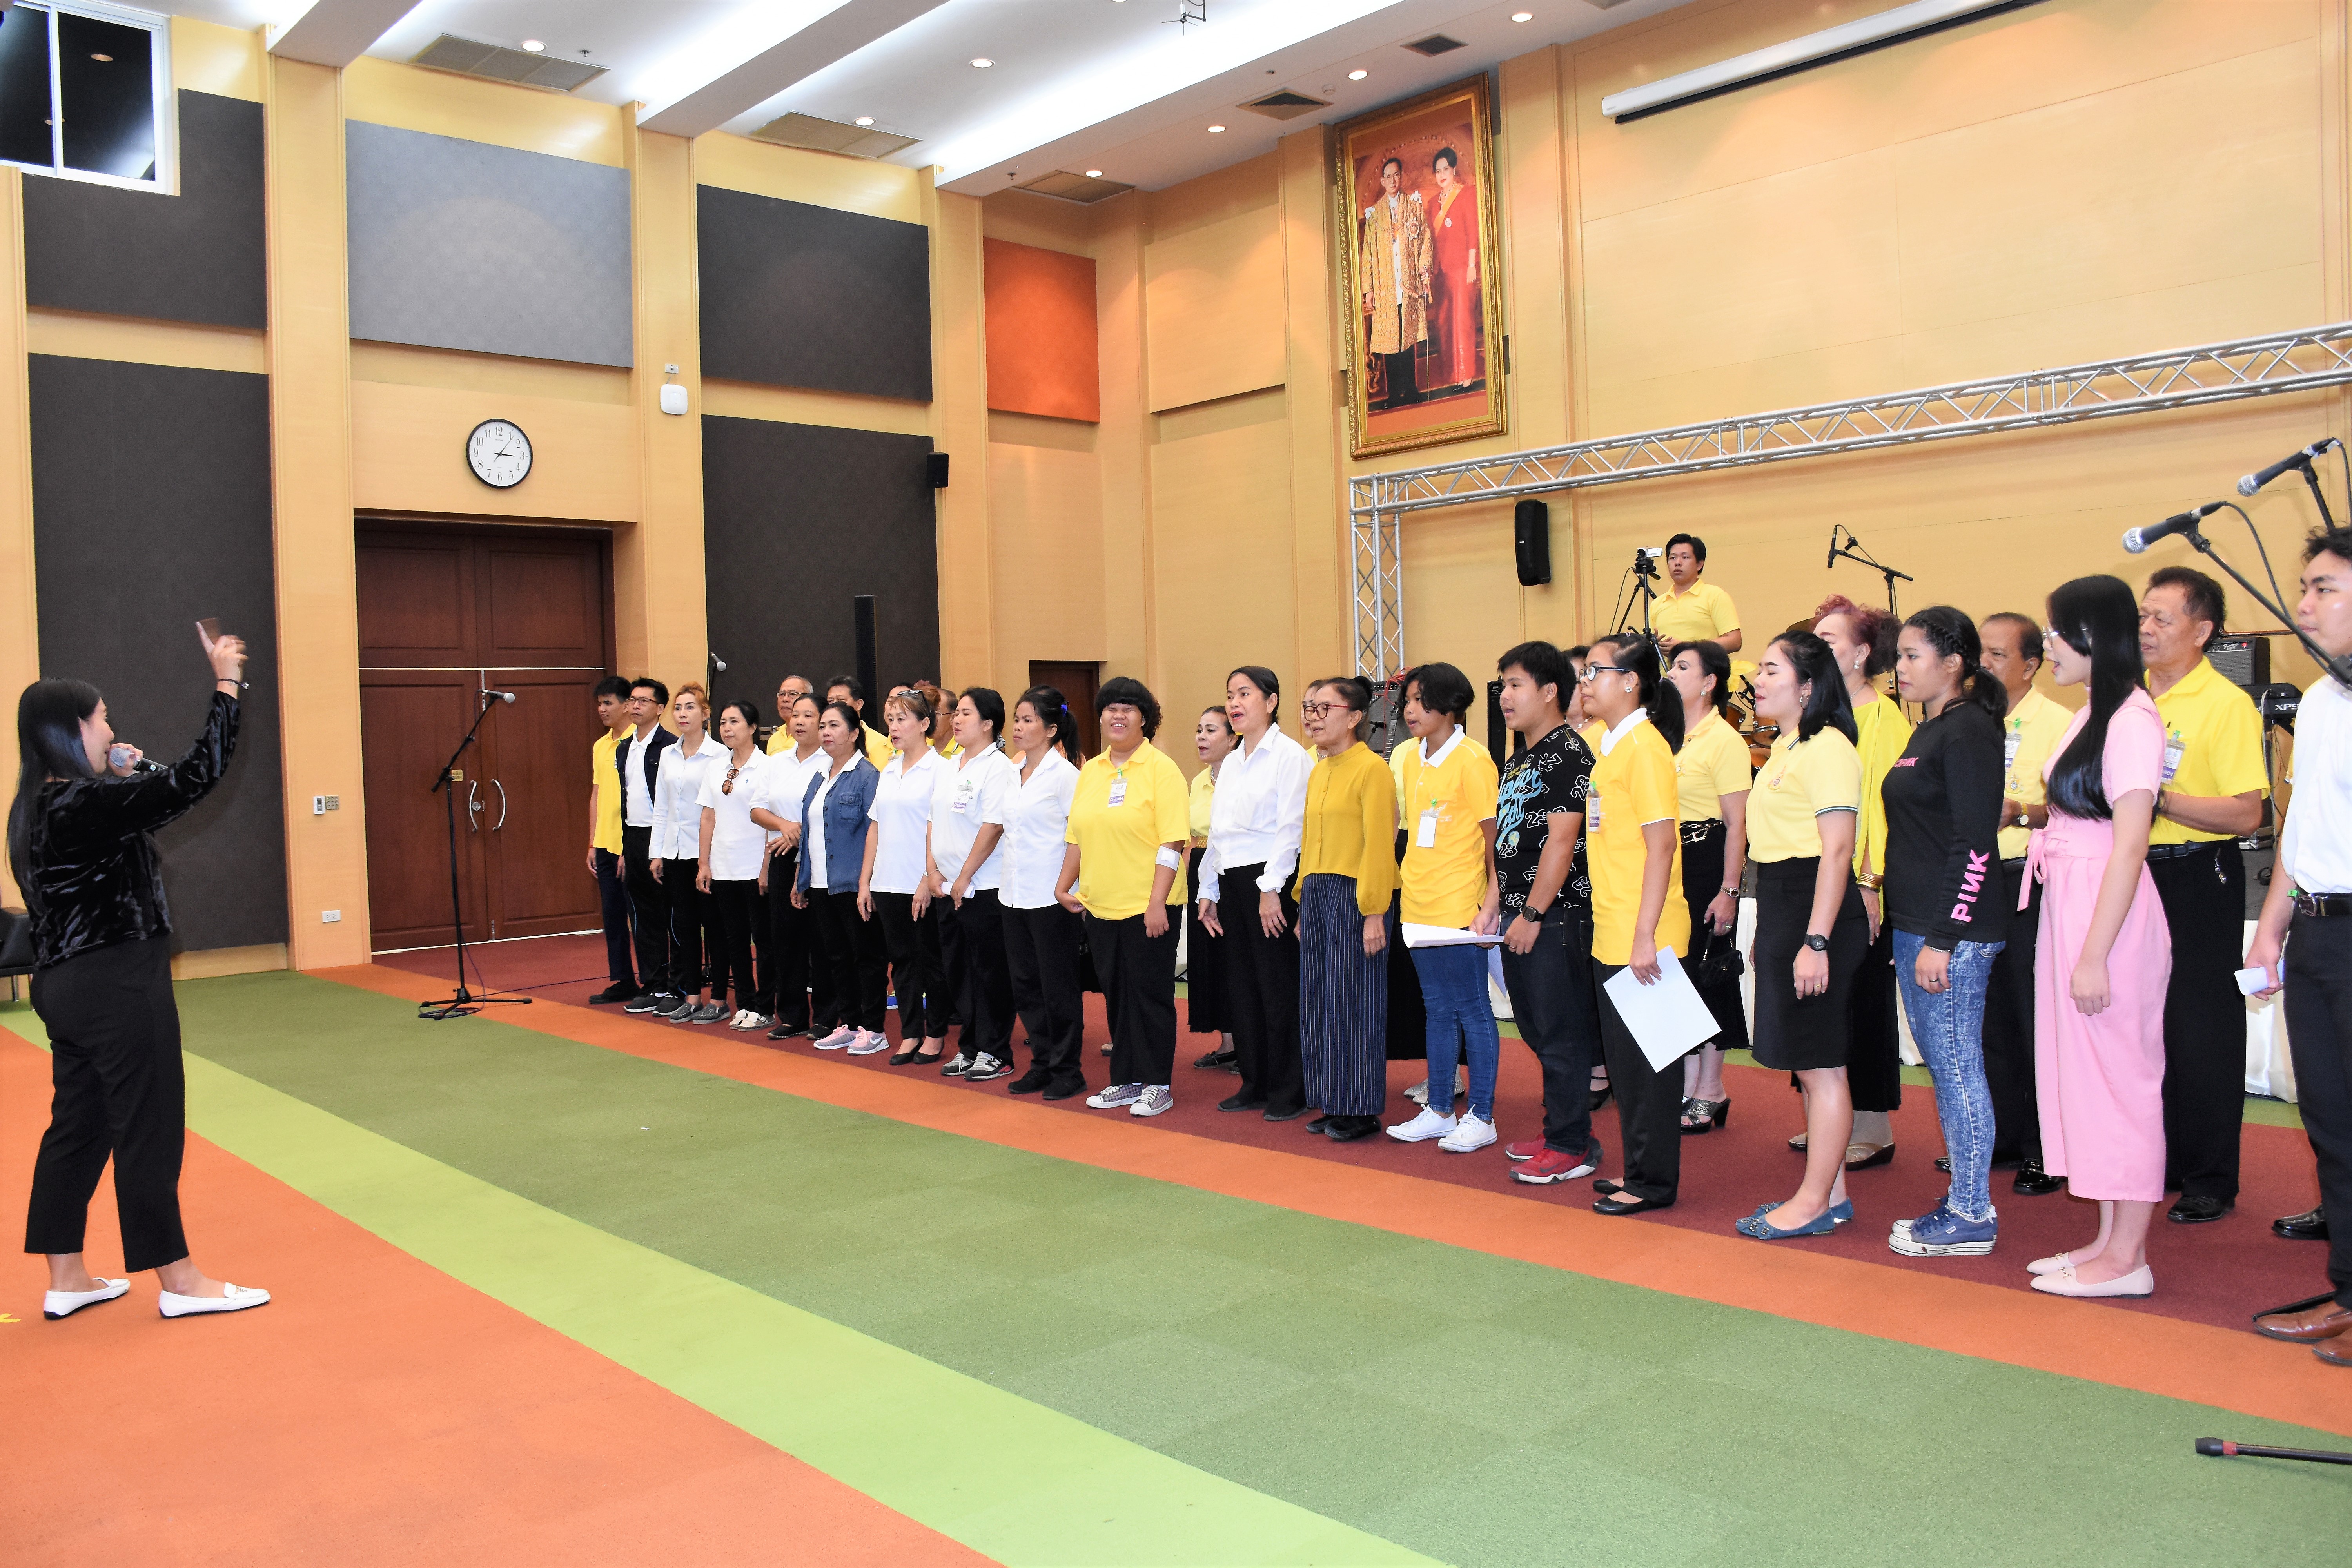 พม. ร่วมซักซ้อมการขับร้องบทเพลงสดุดีจอมราชา และบทเพลงกำลังใจ เพื่อใช้ประกอบกิจกรรมการแสดงภายในงาน Thailand Social Expo 2019 